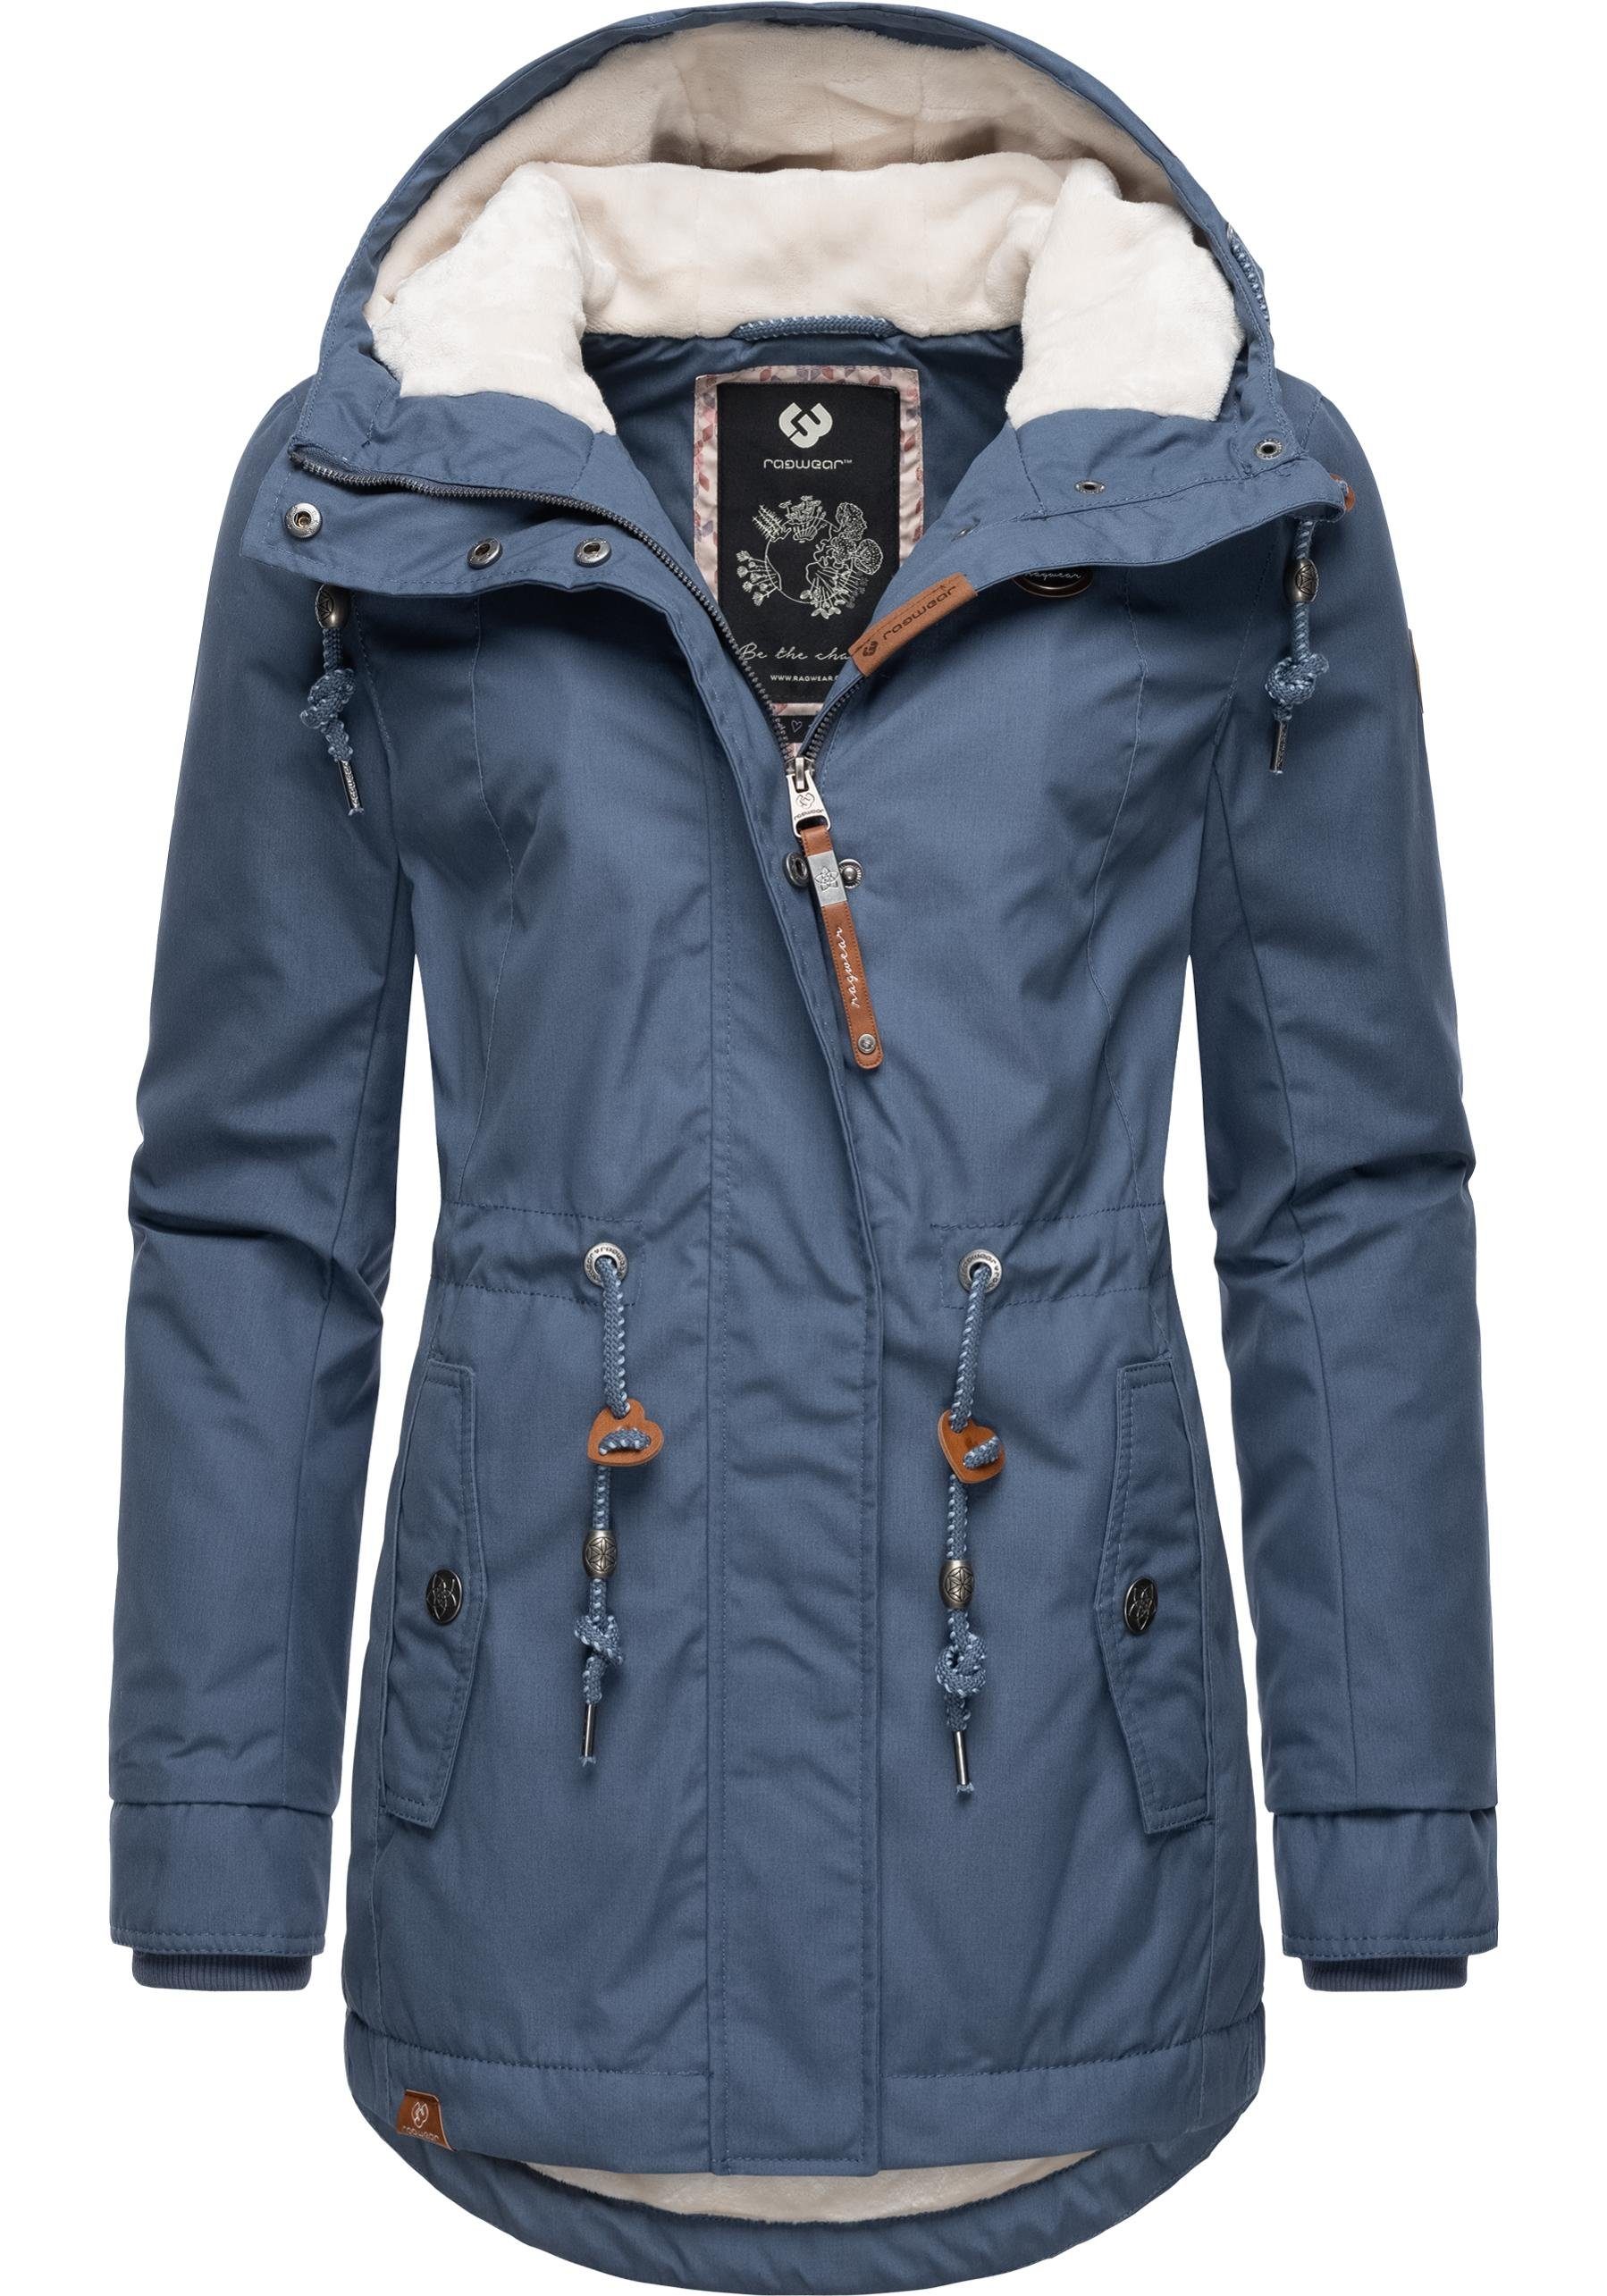 Ragwear Winterjacke Monadis Black Label stylischer Winterparka für die kalte Jahreszeit hellblau